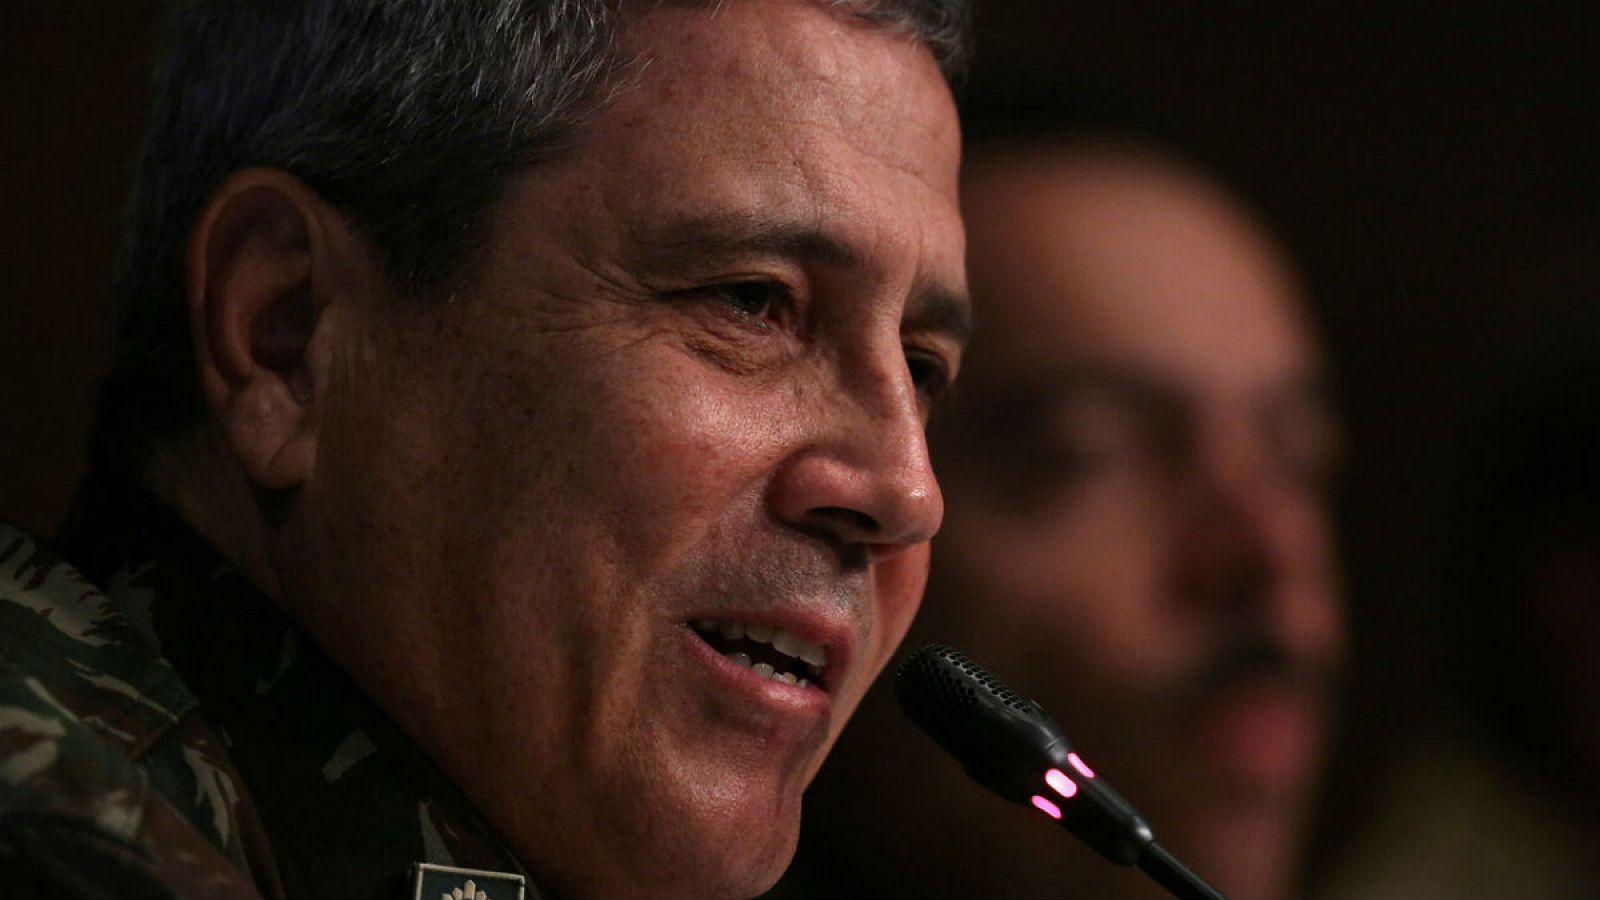 Walter Braga Netto ha sido designado como ministro de Presidencia dentro del gobierno del ultraderechista Jair Bolsonaro, presidente de Brasil. En la imagen, durante una conferencia en Río de Janeiro en 2018.